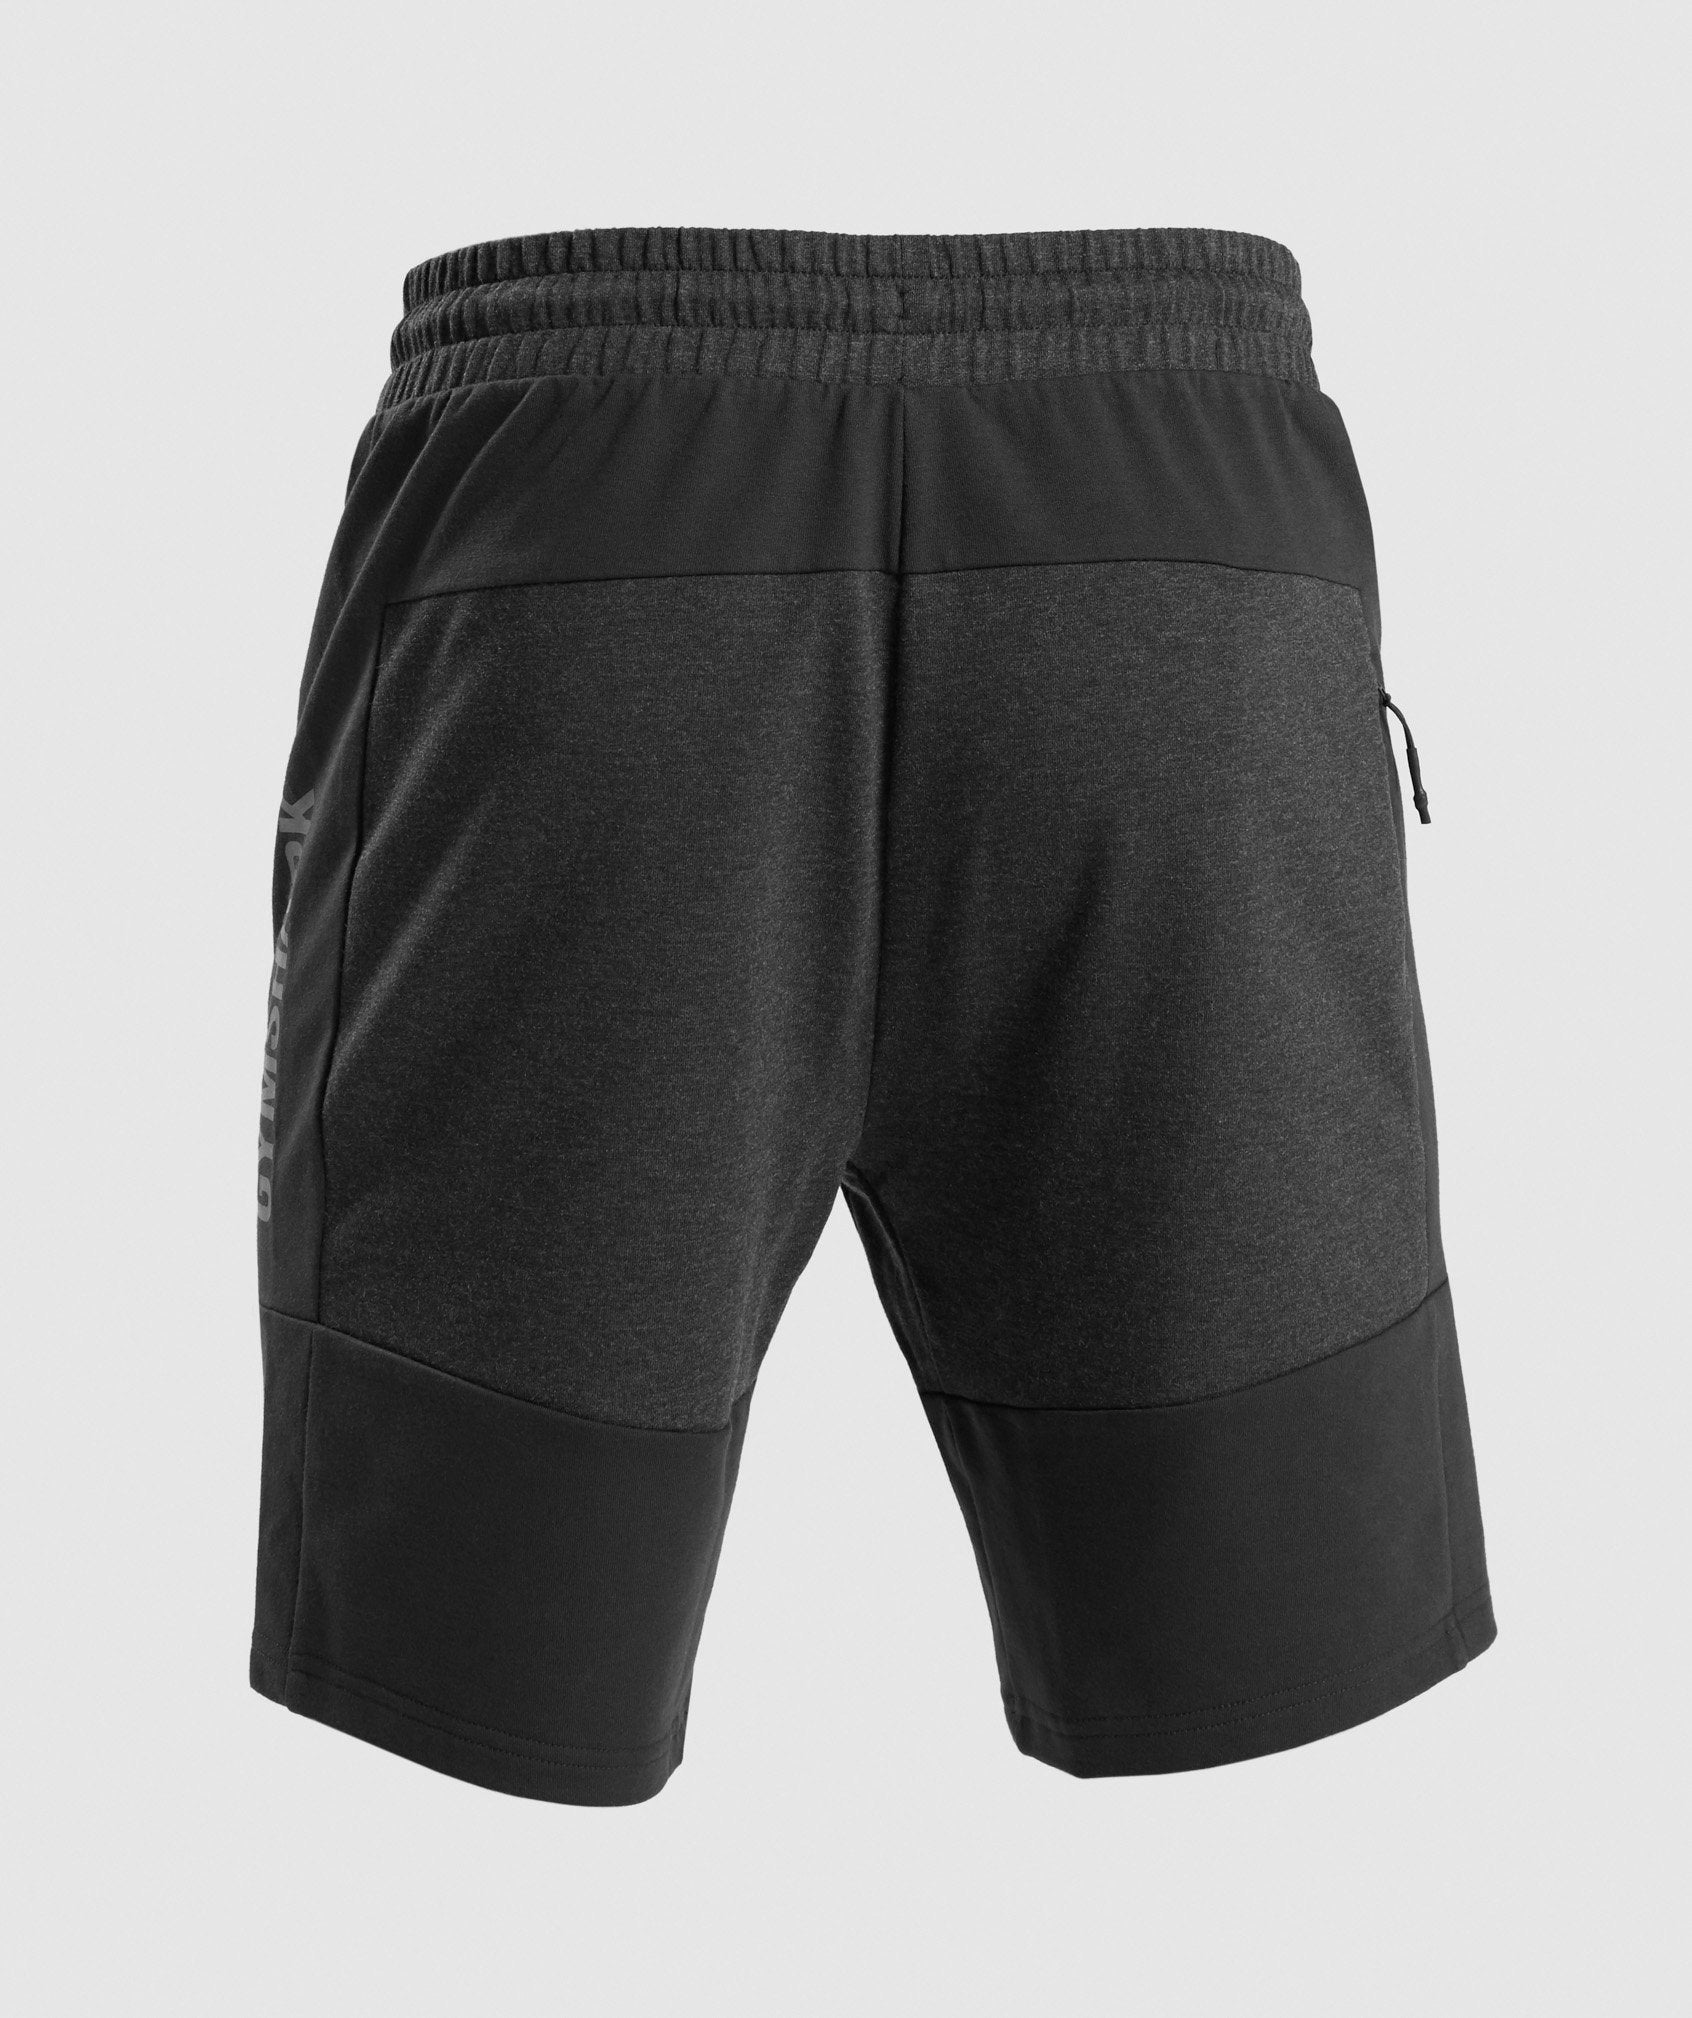 Revive Shorts in Black/Black Marl